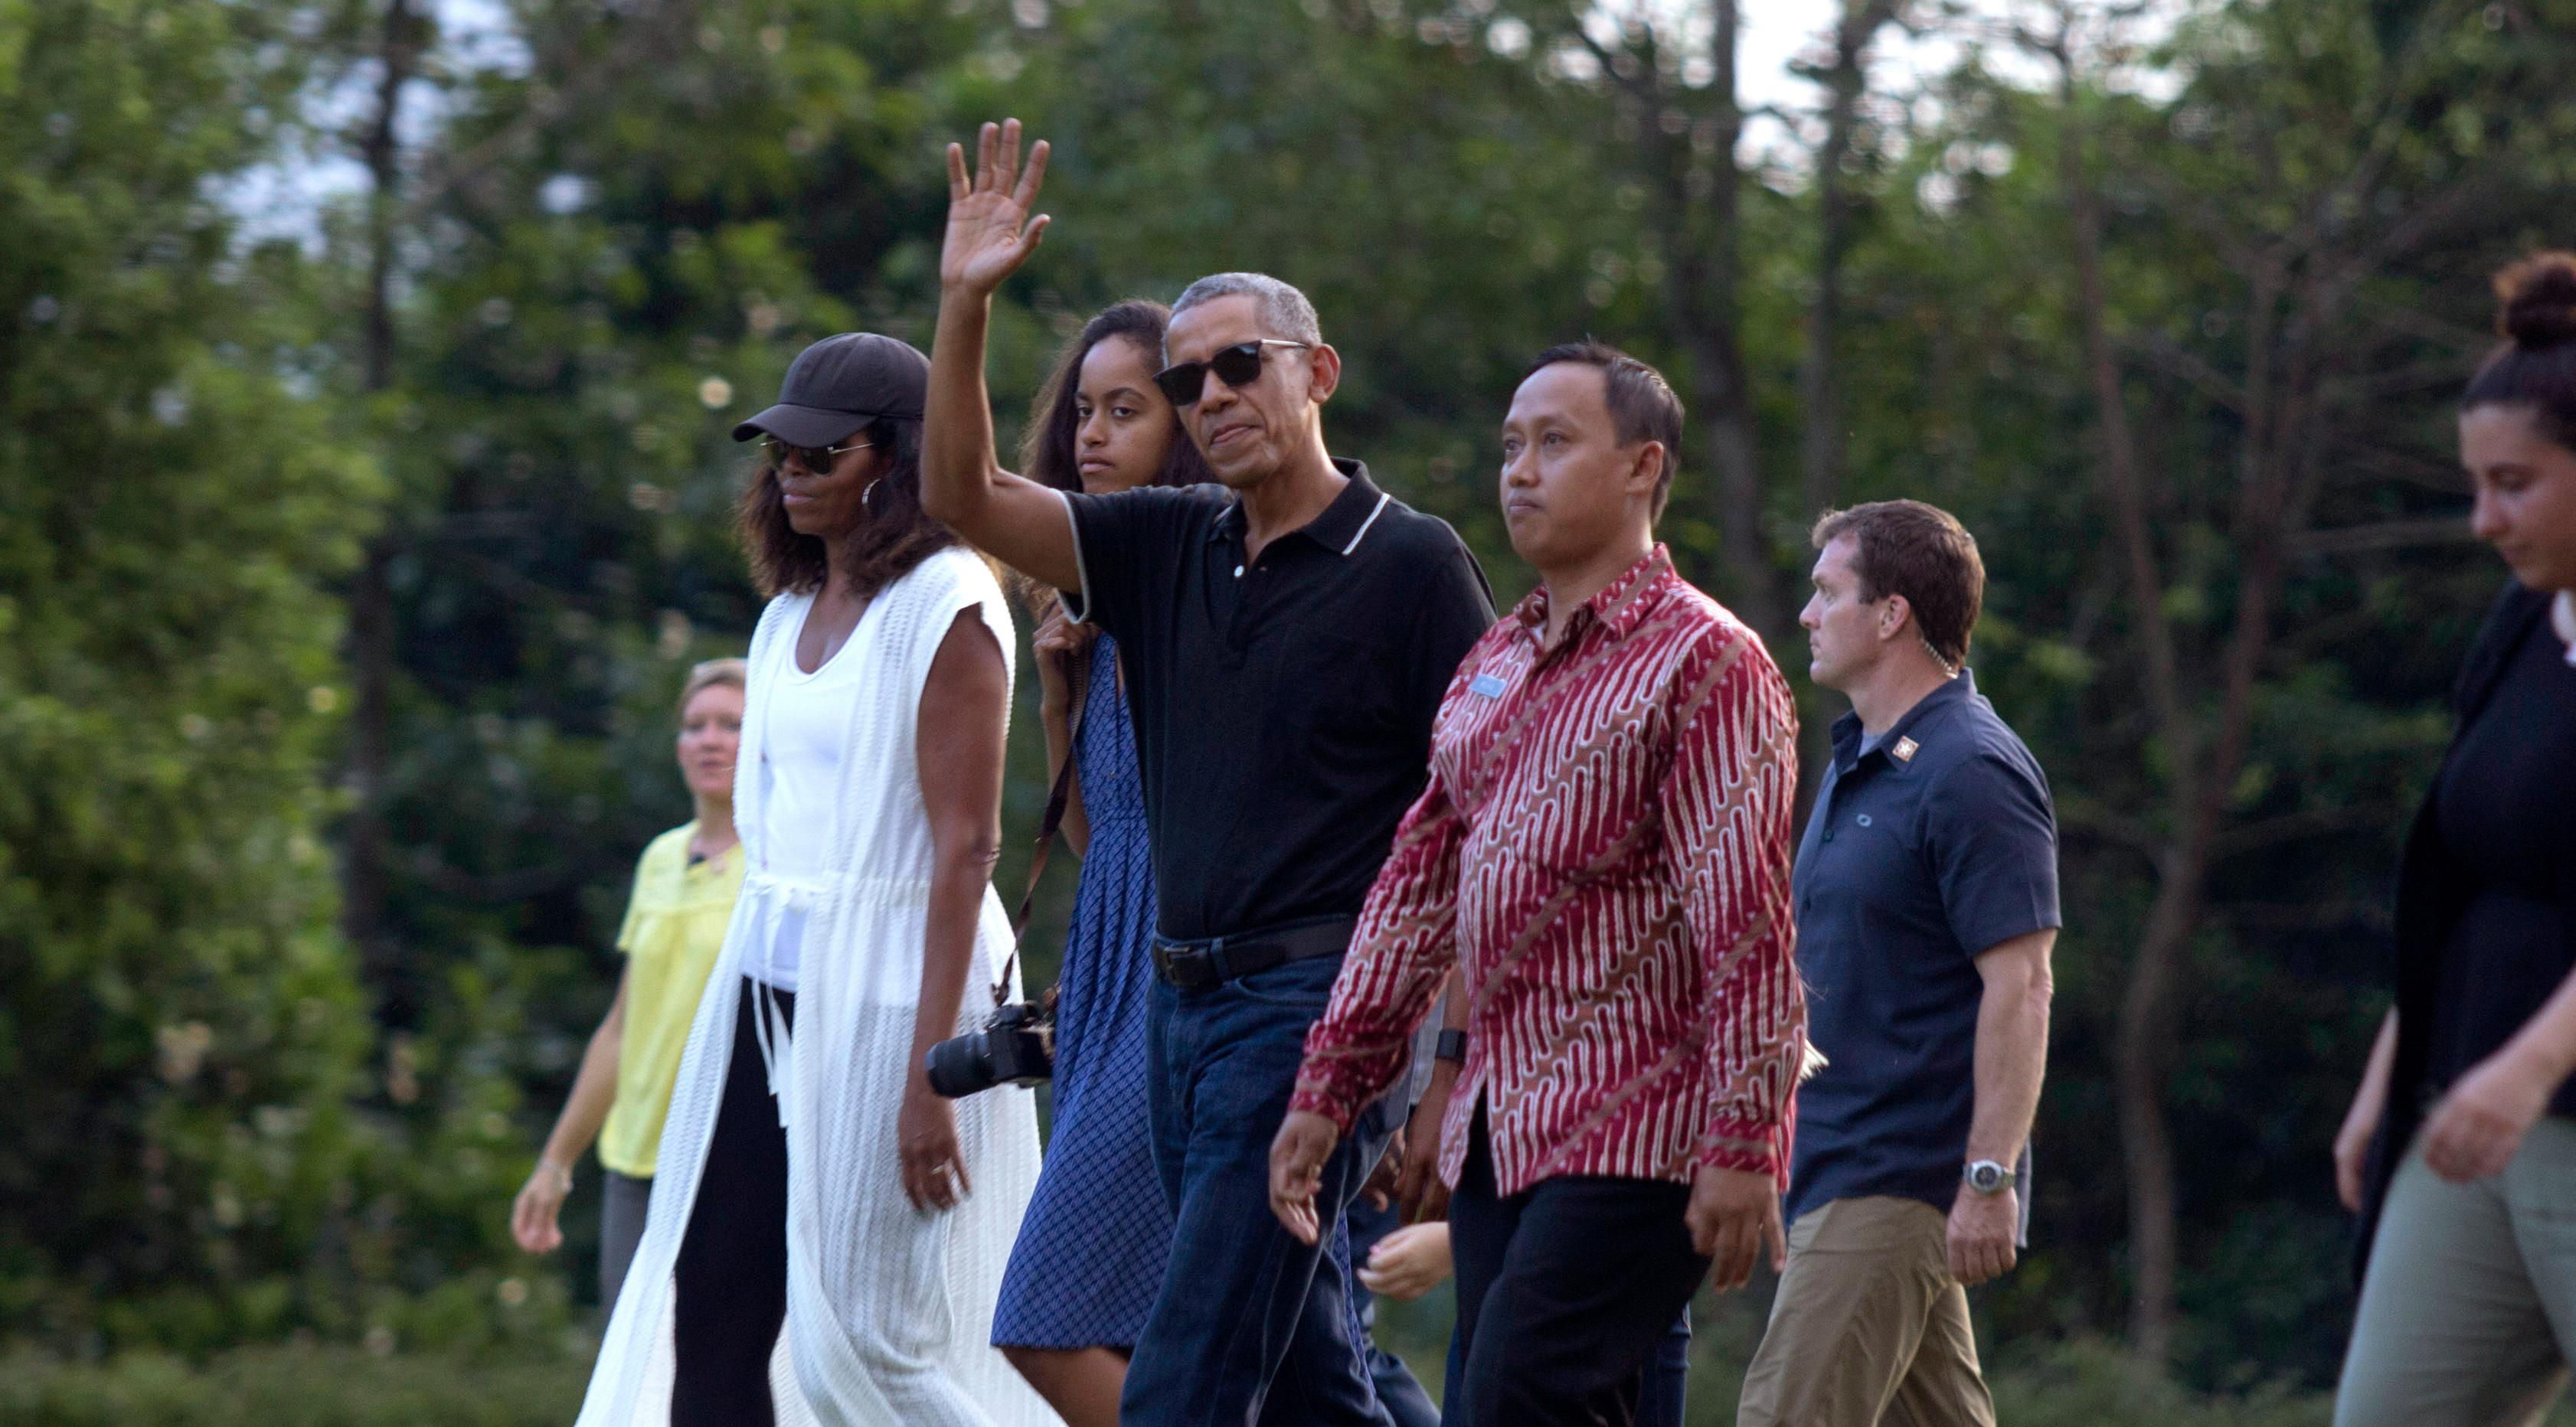 Mantan Presiden AS, Barack Obama mengabadikan gambar dari ponselnya saat berwisata di Candi Borobudur, Magelang, Jawa Tengah, Indonesia, (28/6). Obama mengenakan celana jeans biru dan polo shirt hitam. (AP Photo / Slamet Riyadi)